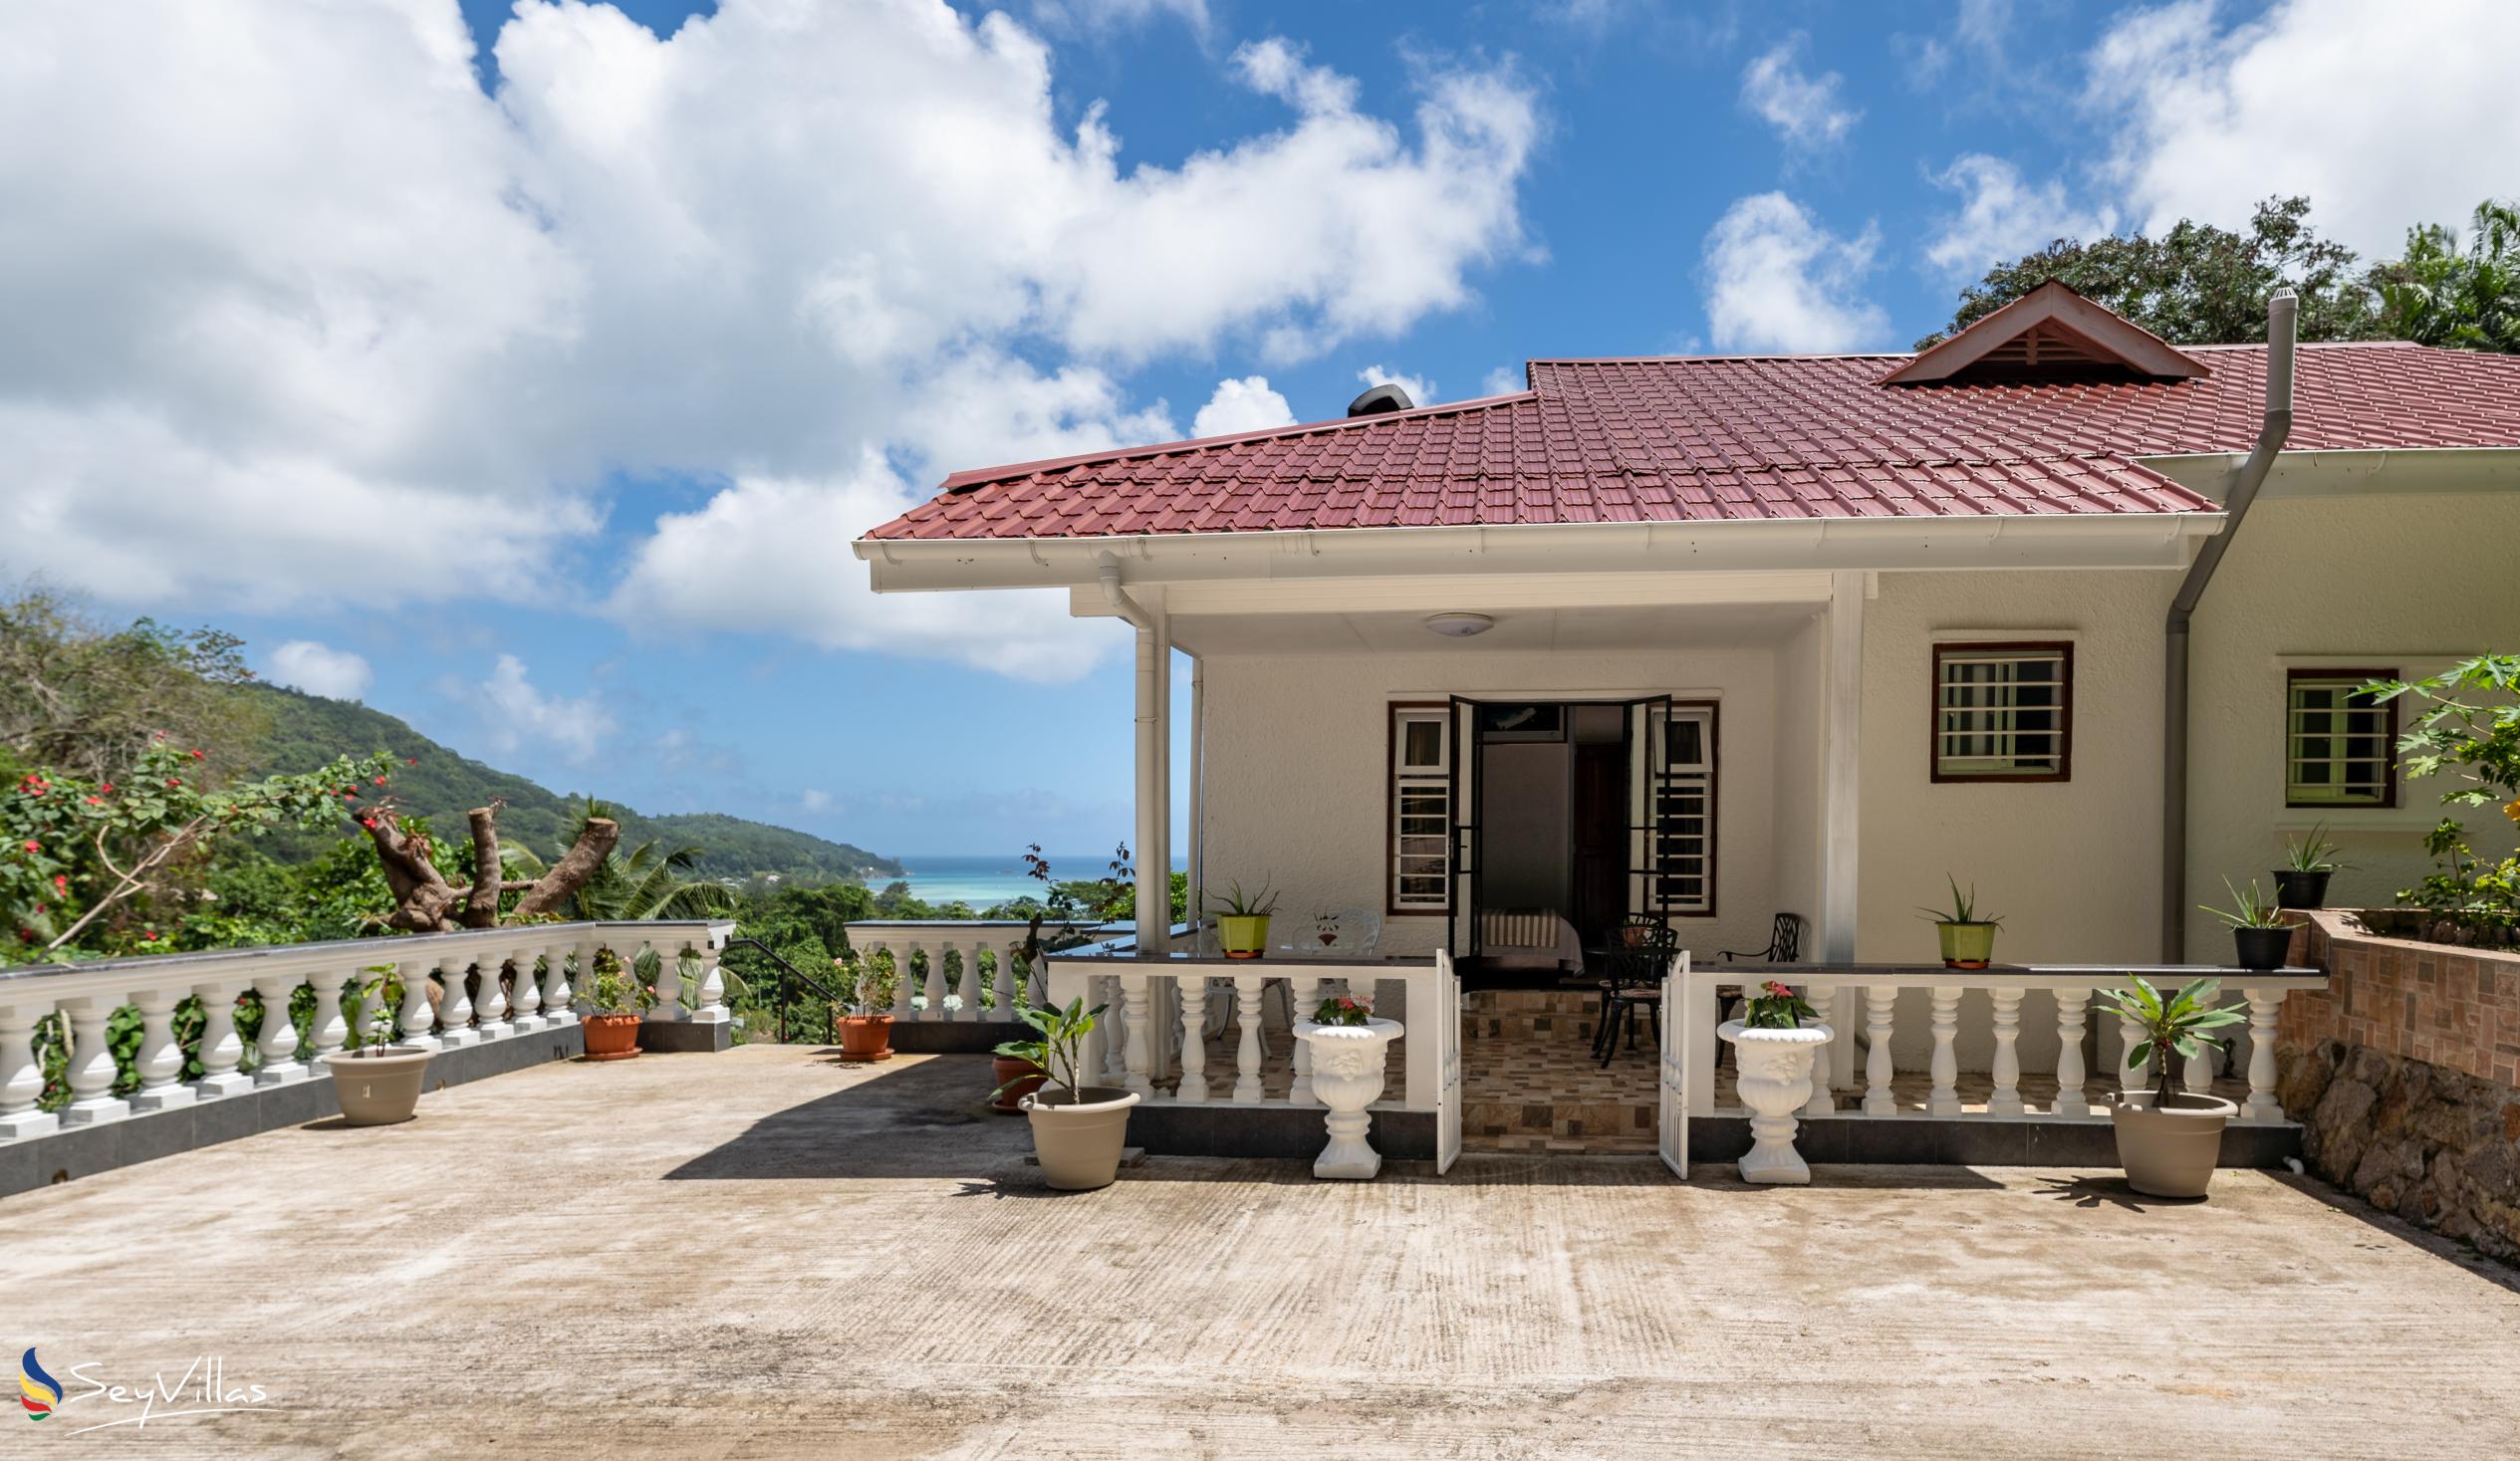 Foto 1: Jane's Serenity Guesthouse - Extérieur - Mahé (Seychelles)